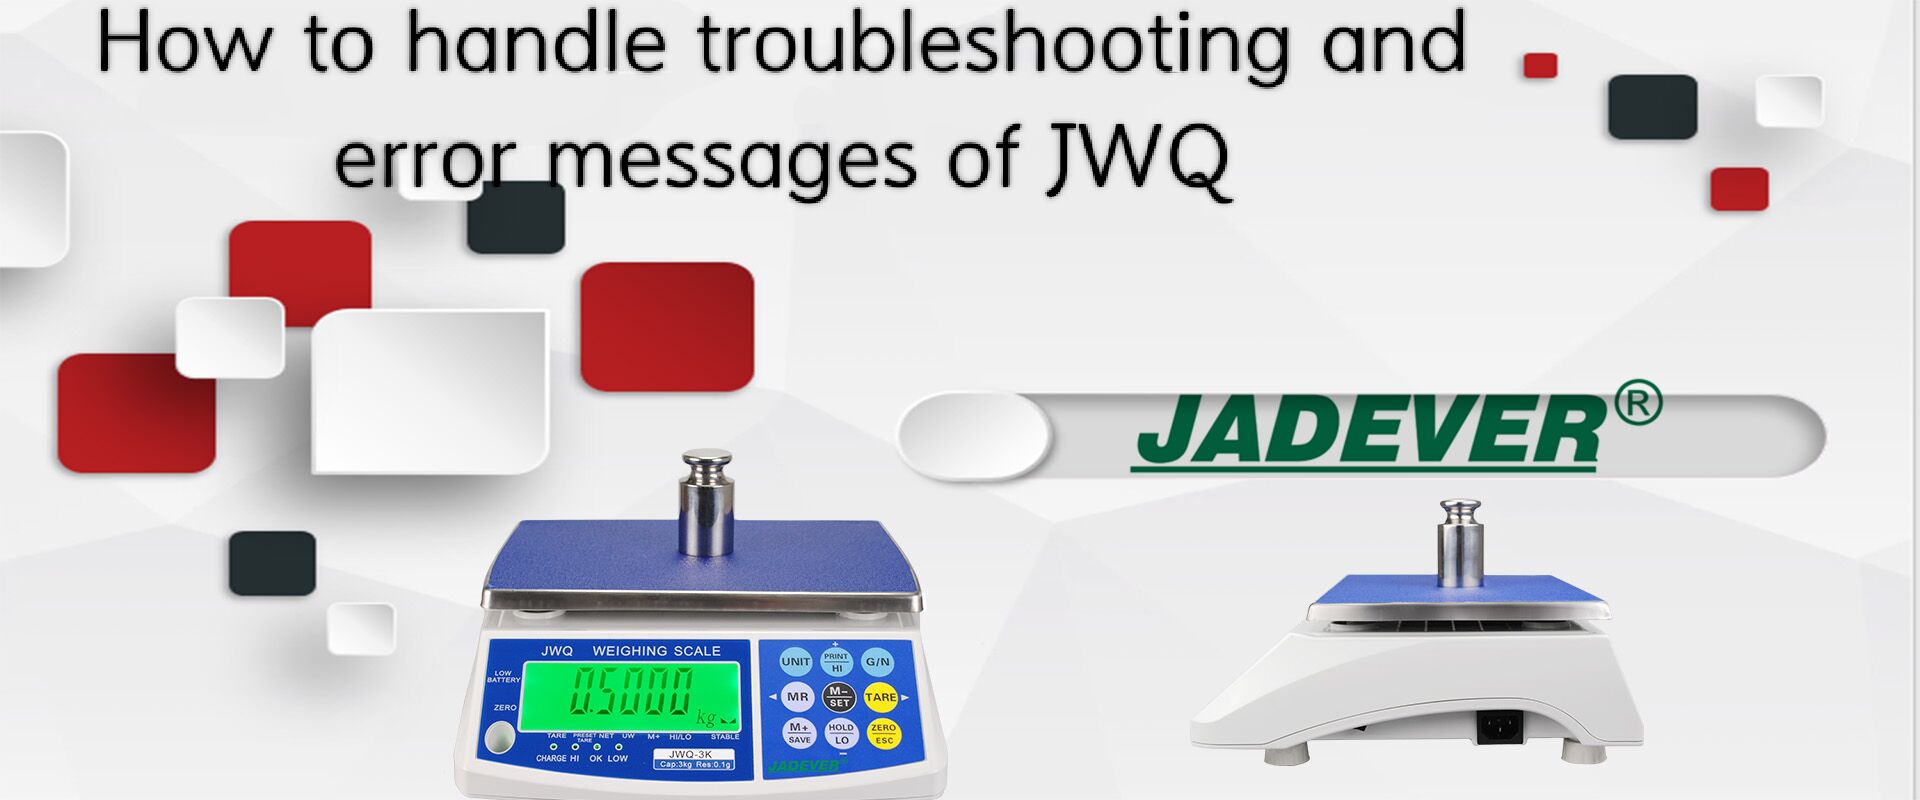 Come gestire la risoluzione dei problemi e i messaggi di errore di JWQ?
